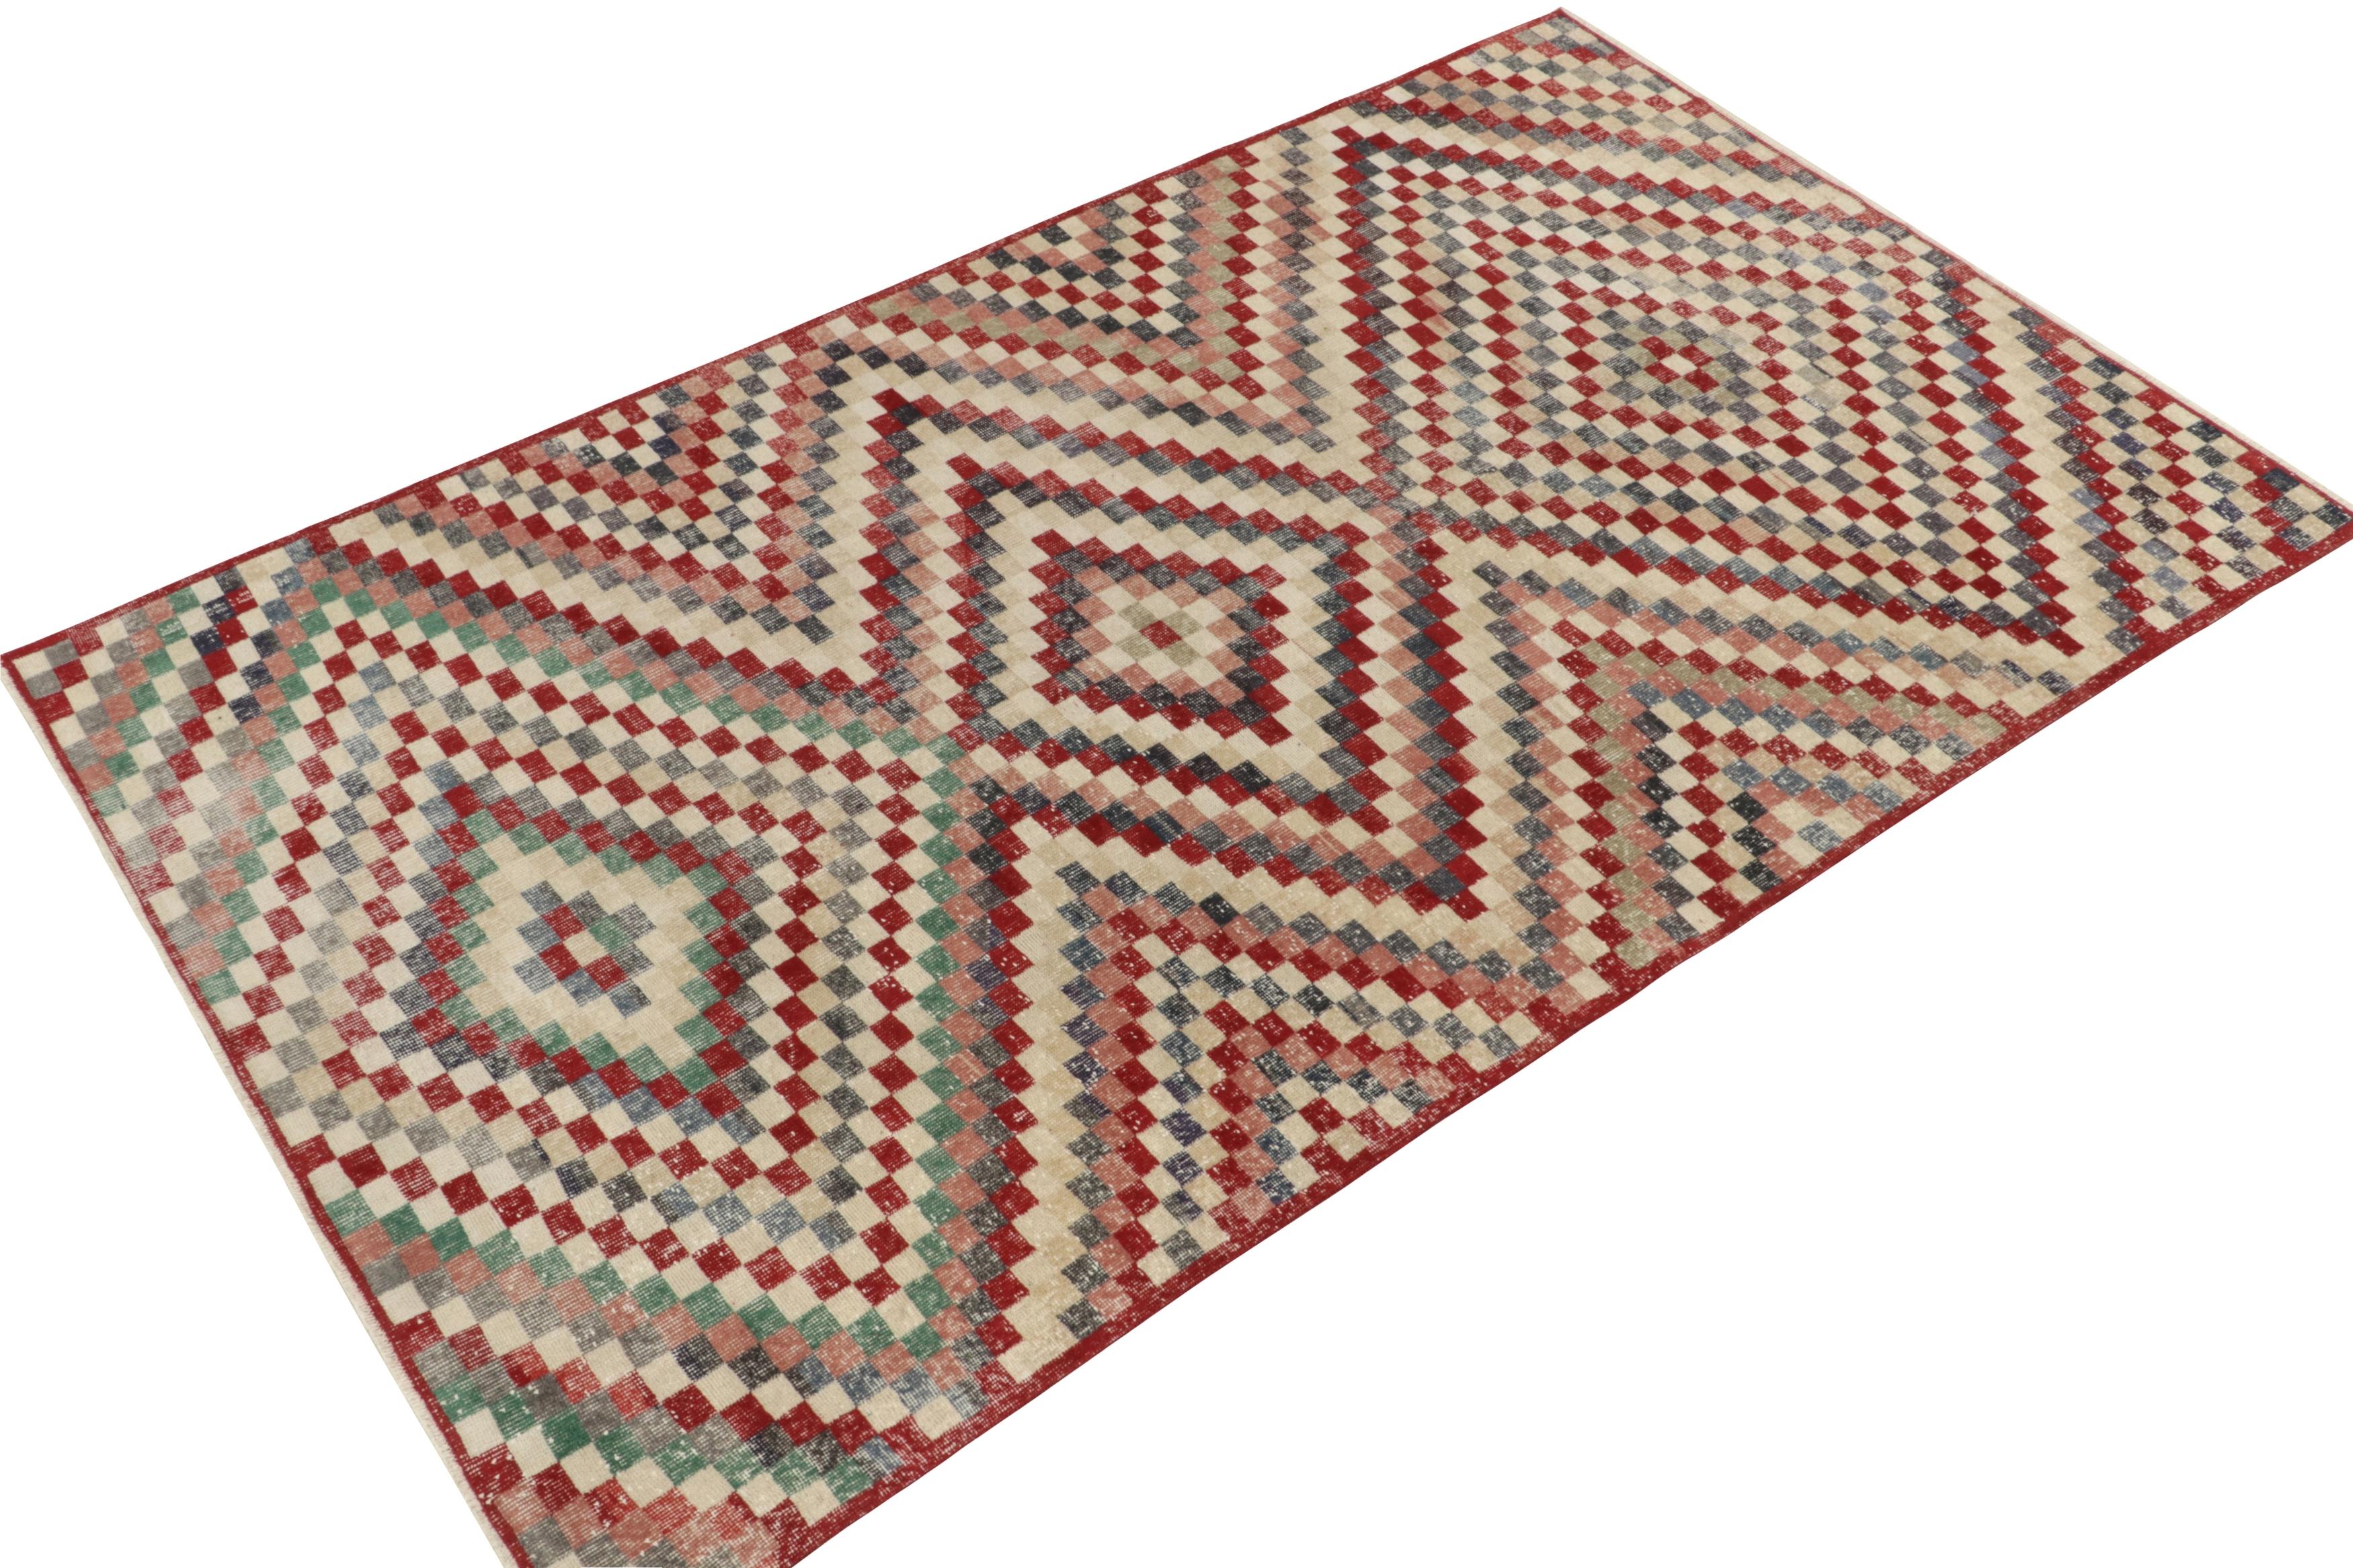 Der handgeknüpfte Wollteppich 6x10 im Vintage-Stil stammt von einem angesehenen türkischen Designer und ist Teil der Mid-Century Pasha Collection'S von Rug & Kilim. 

Dieses traditionelle Modell zeichnet sich durch ein raffiniertes geometrisches